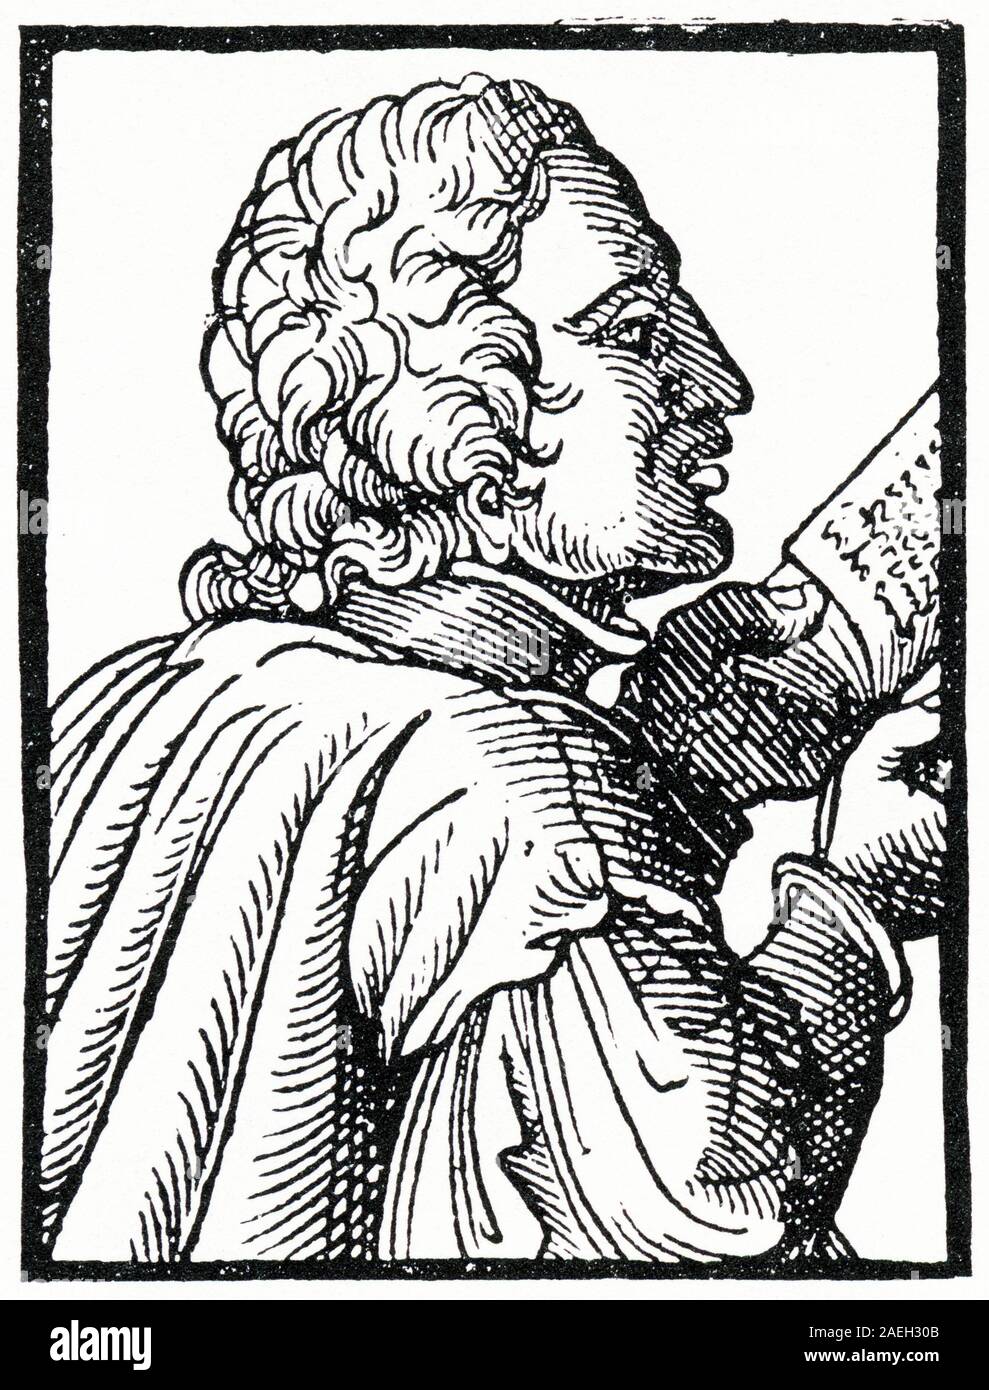 Gravure de Johannes Tauler OP (ch. 1300 - 1361), mystique allemand prédicateur et théologien catholique. Un disciple de Maître Eckhart, il appartenait à l'ordre dominicain. Tauler a été connu comme l'un des plus importants des mystiques rhénans. Banque D'Images